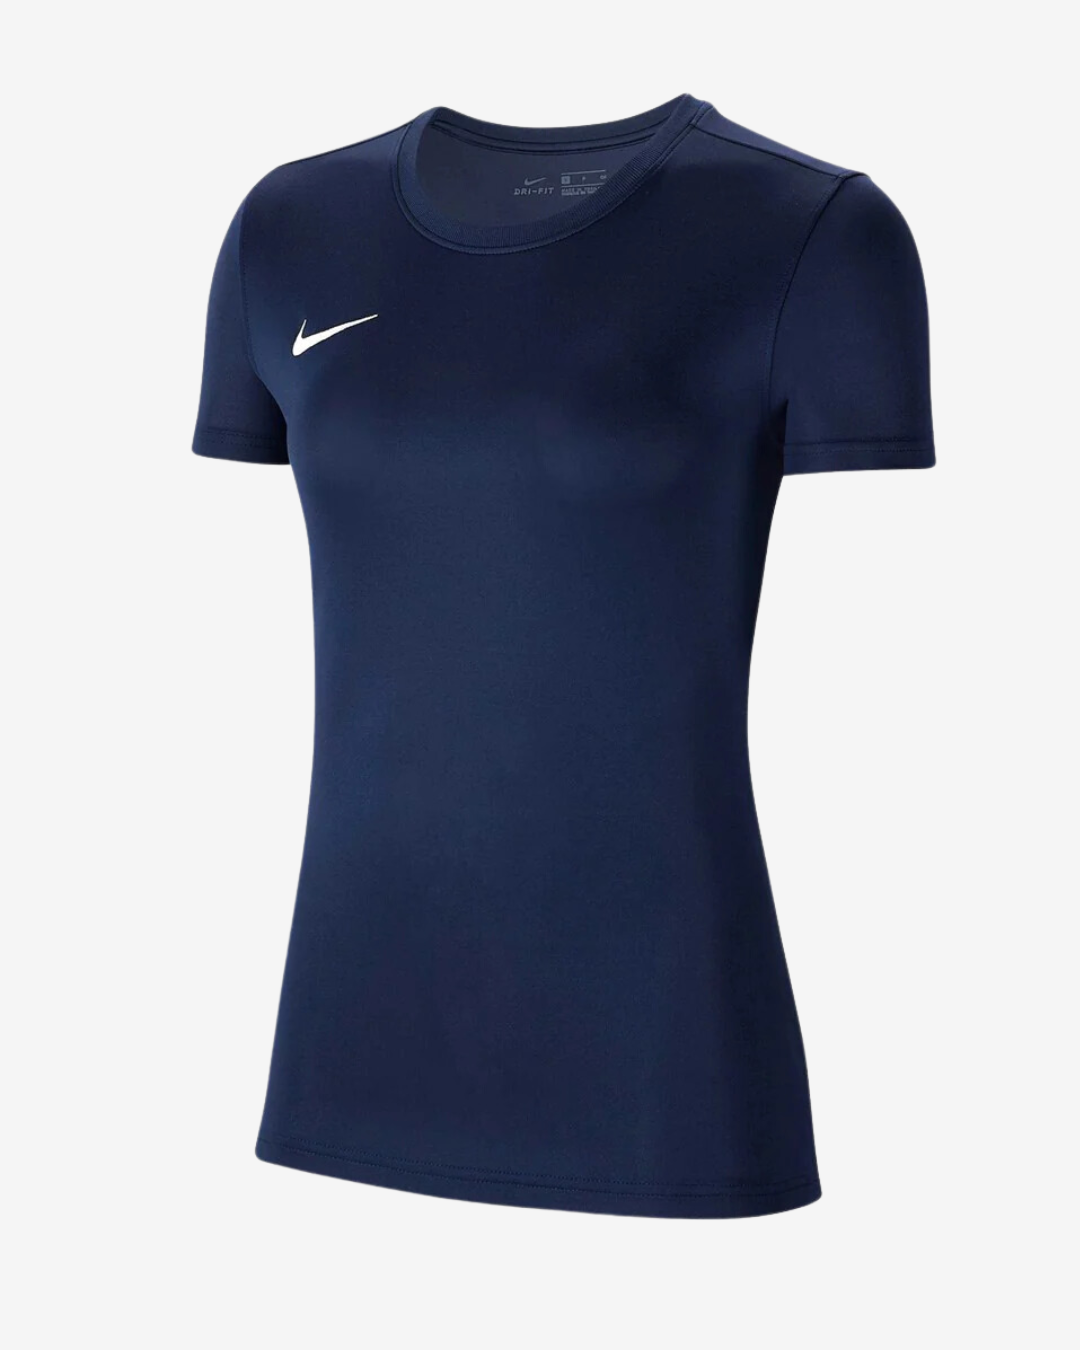 Billede af Nike Dri-fit park 7 dame t-shirt - Navy - Str. XL - Modish.dk